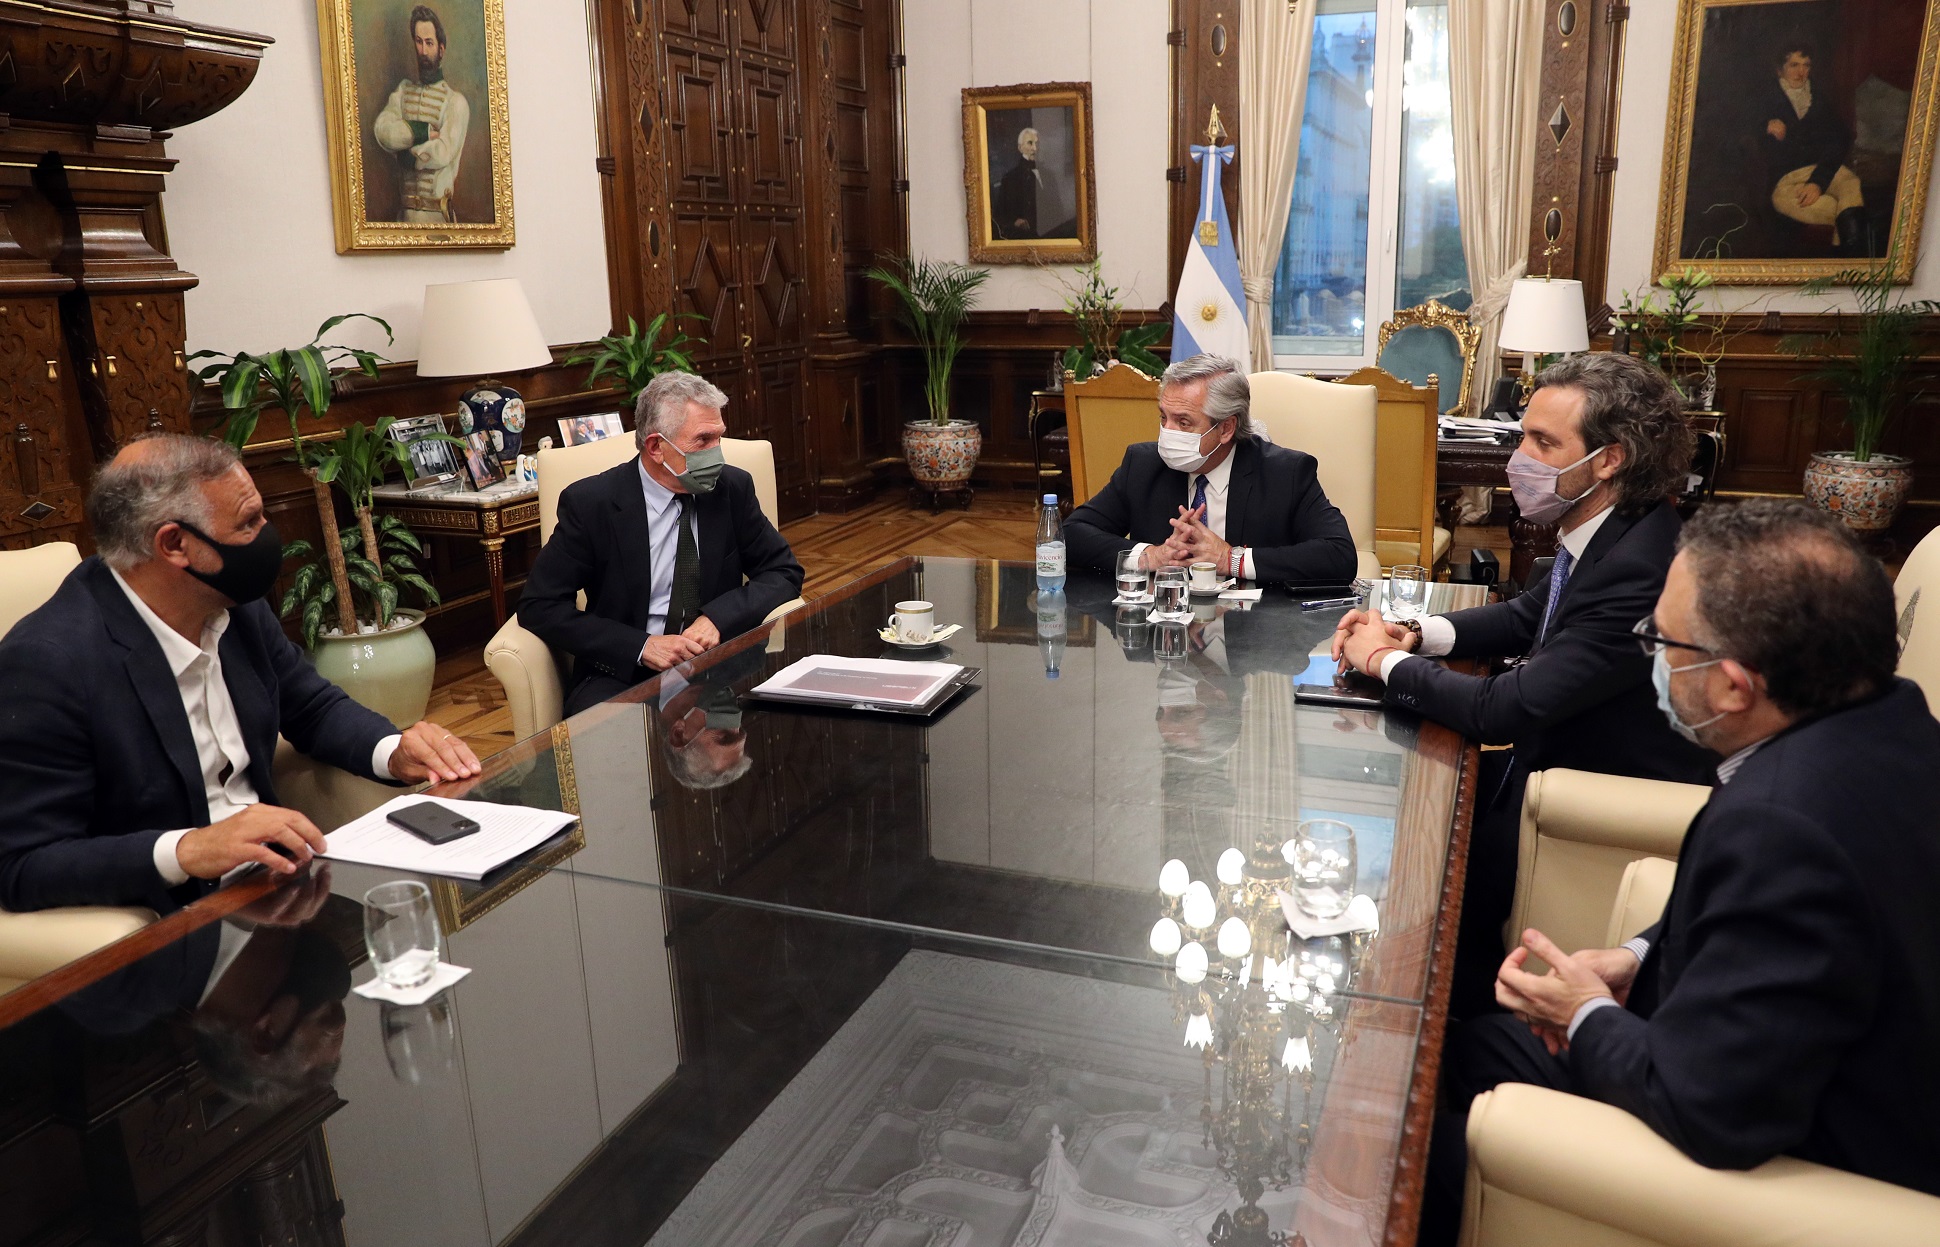 El presidente Alberto Fernández recibió a representantes de la empresa Newsan